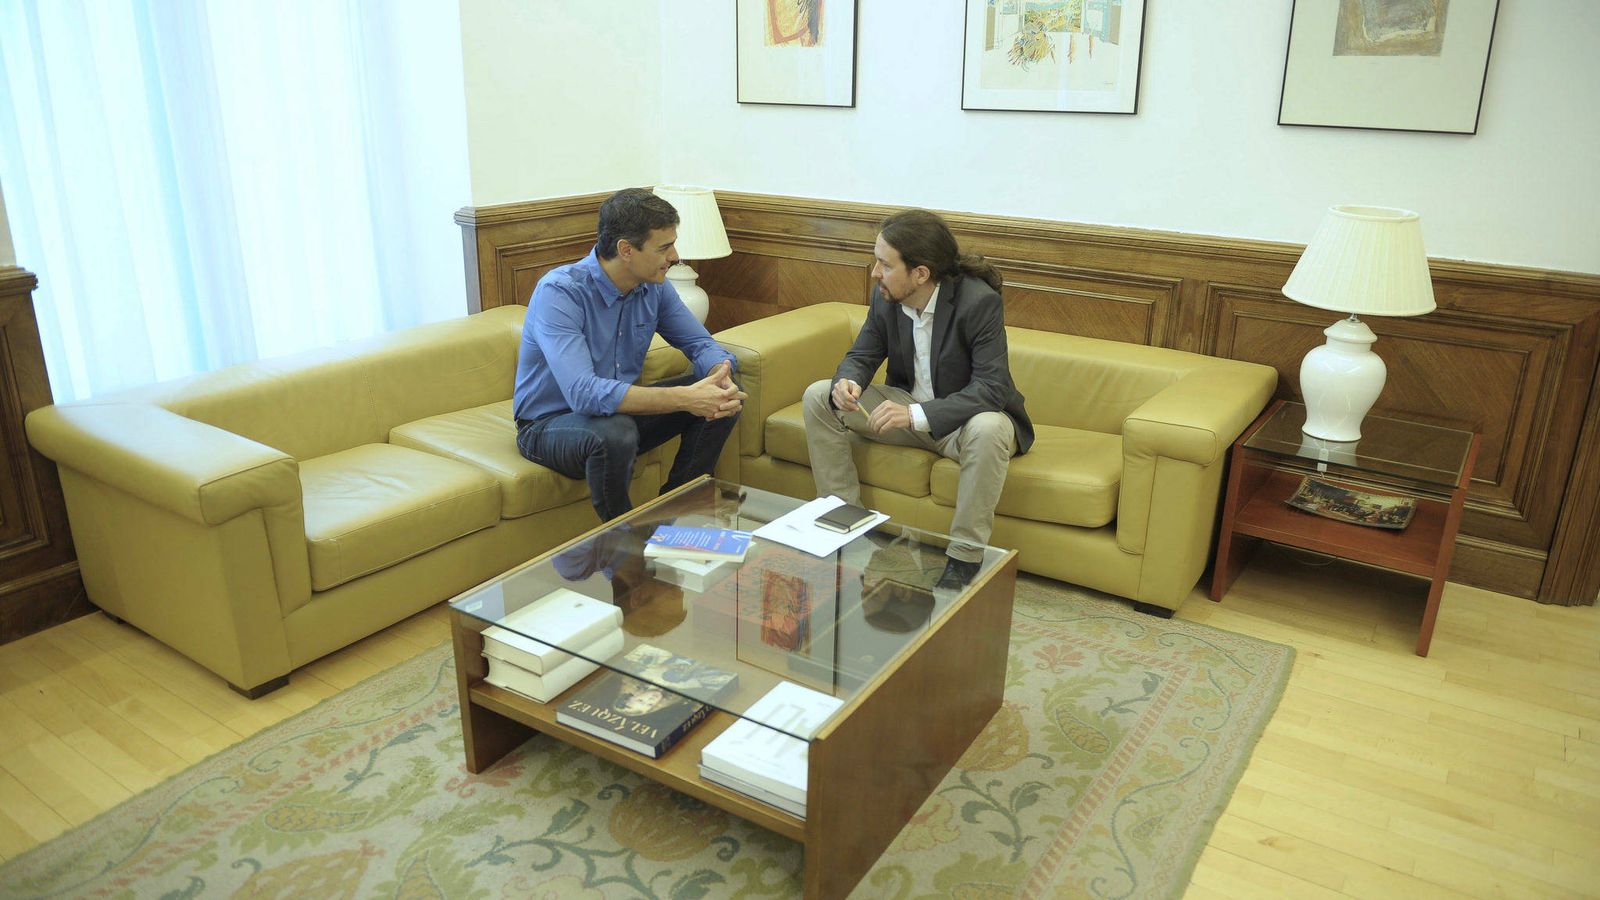 Foto: Pedro Sánchez y Pablo Iglesias conversan al comienzo de su reunión en el Congreso del pasado 27 de junio. (Borja Puig | PSOE)